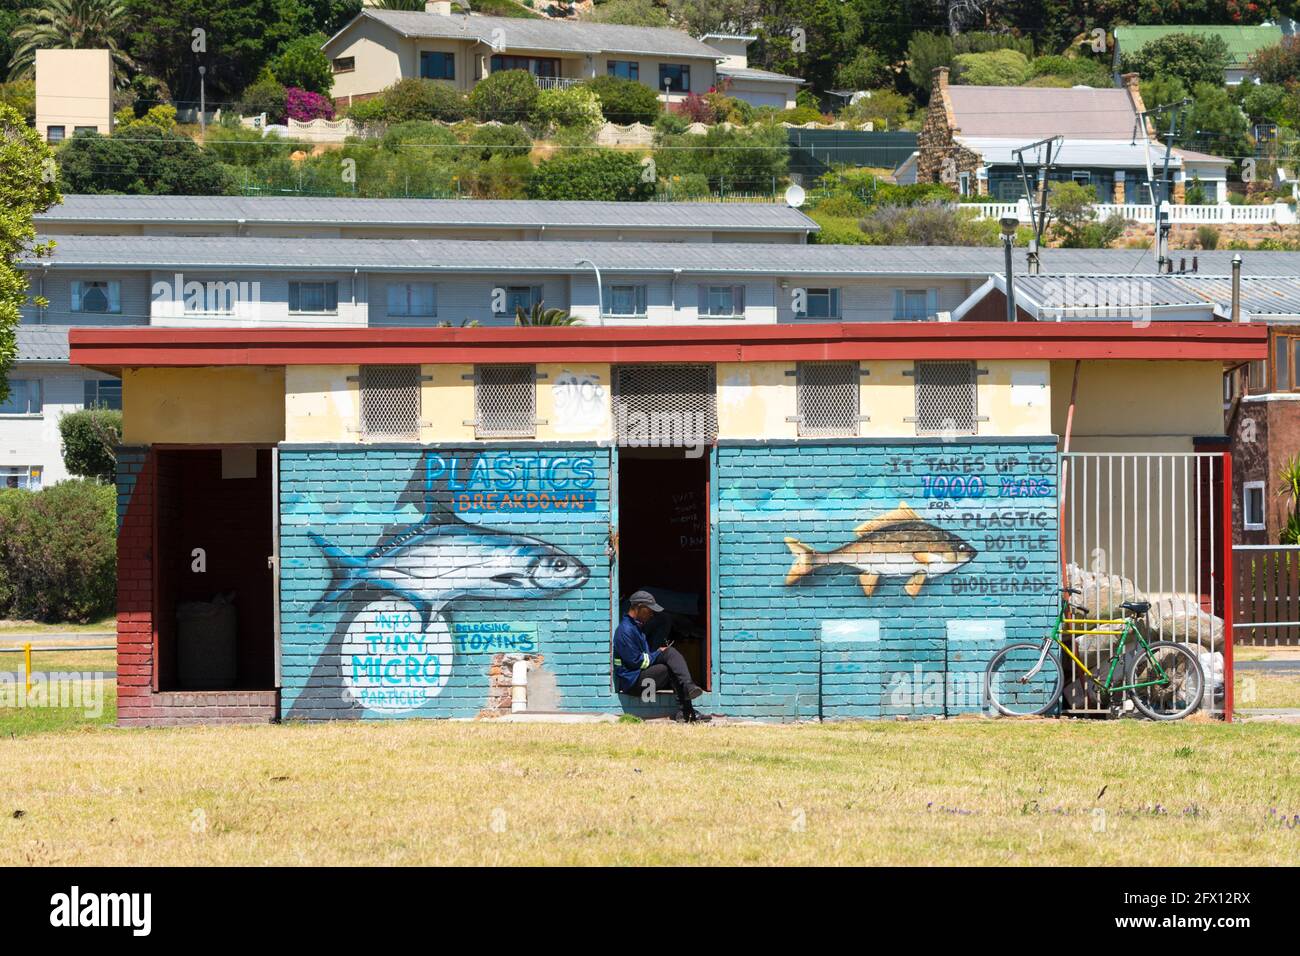 Rette das Meer vor Plastik, einem Wandgemälde an der Wand eines öffentlichen Gebäudes mit einer Umweltbotschaft über die Plastikverschmutzung im Ozean Stockfoto